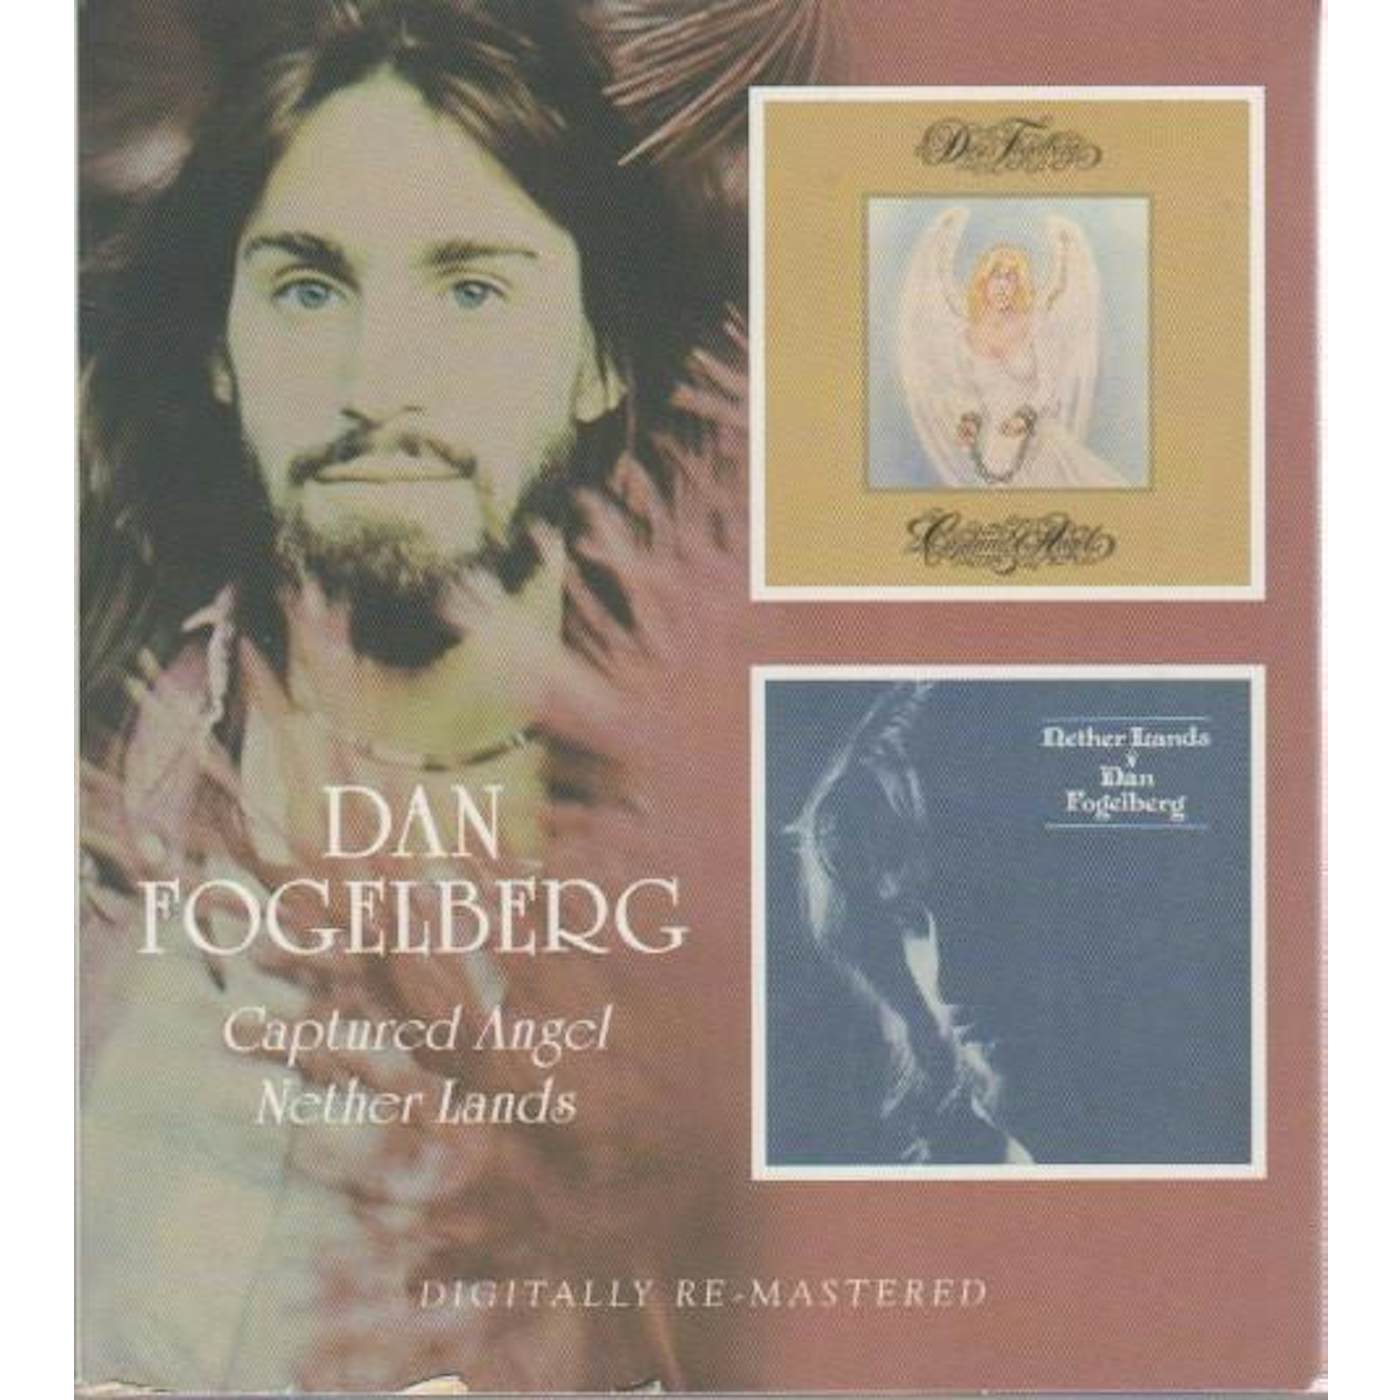 Dan Fogelberg CAPTURED ANGEL / NETHER LANDS (REMASTERED) CD